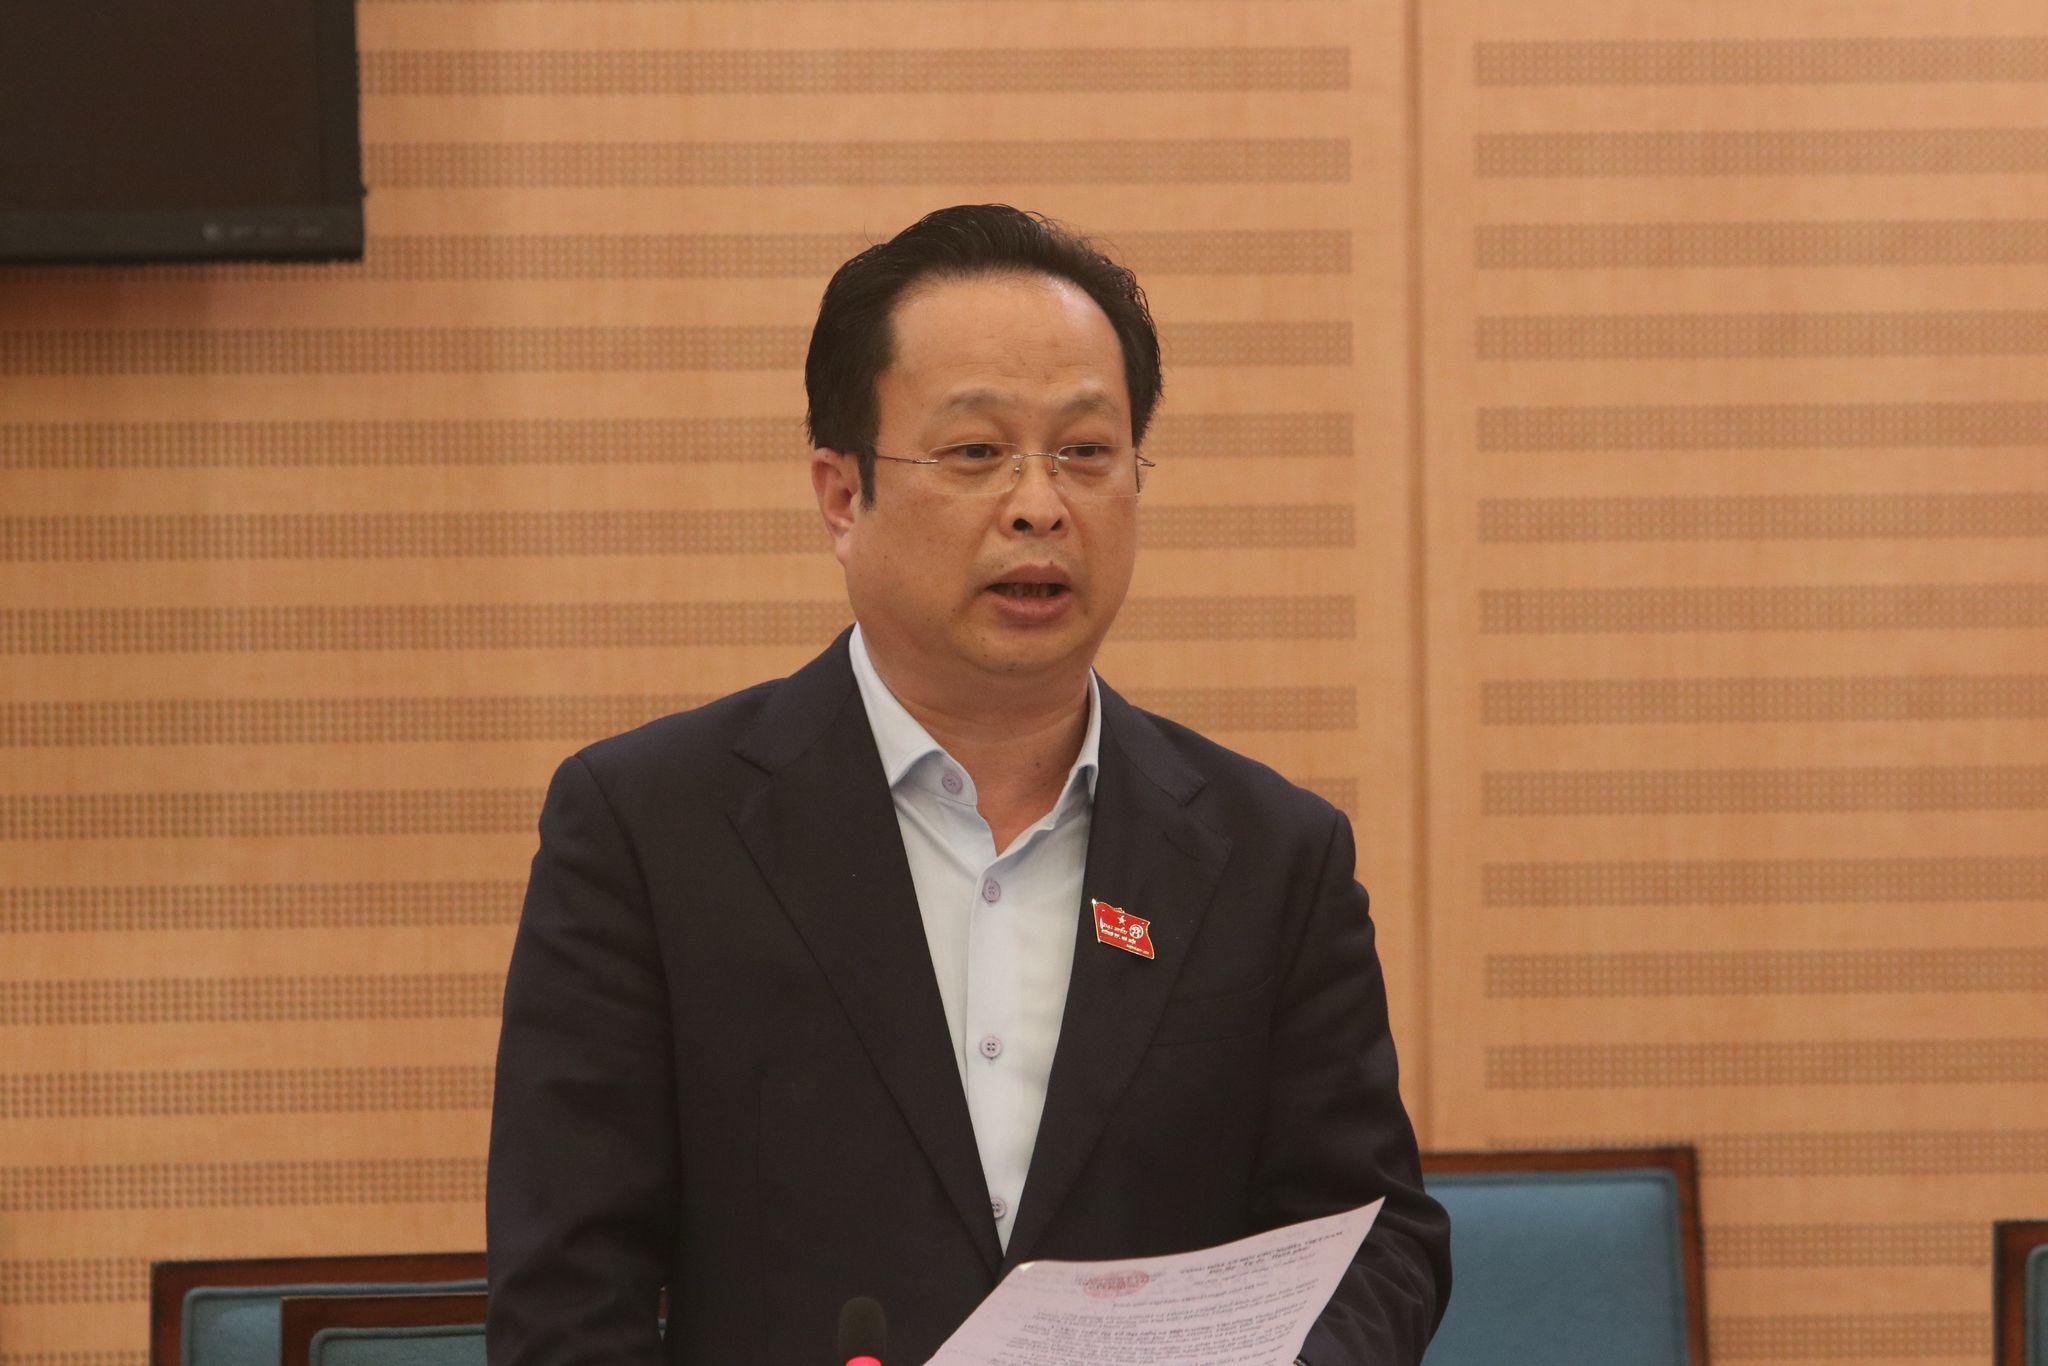 Giám đốc Sở GD-ĐT Hà Nội đính chính phát ngôn hoàn trả 2 lô vắc xin - ảnh 1